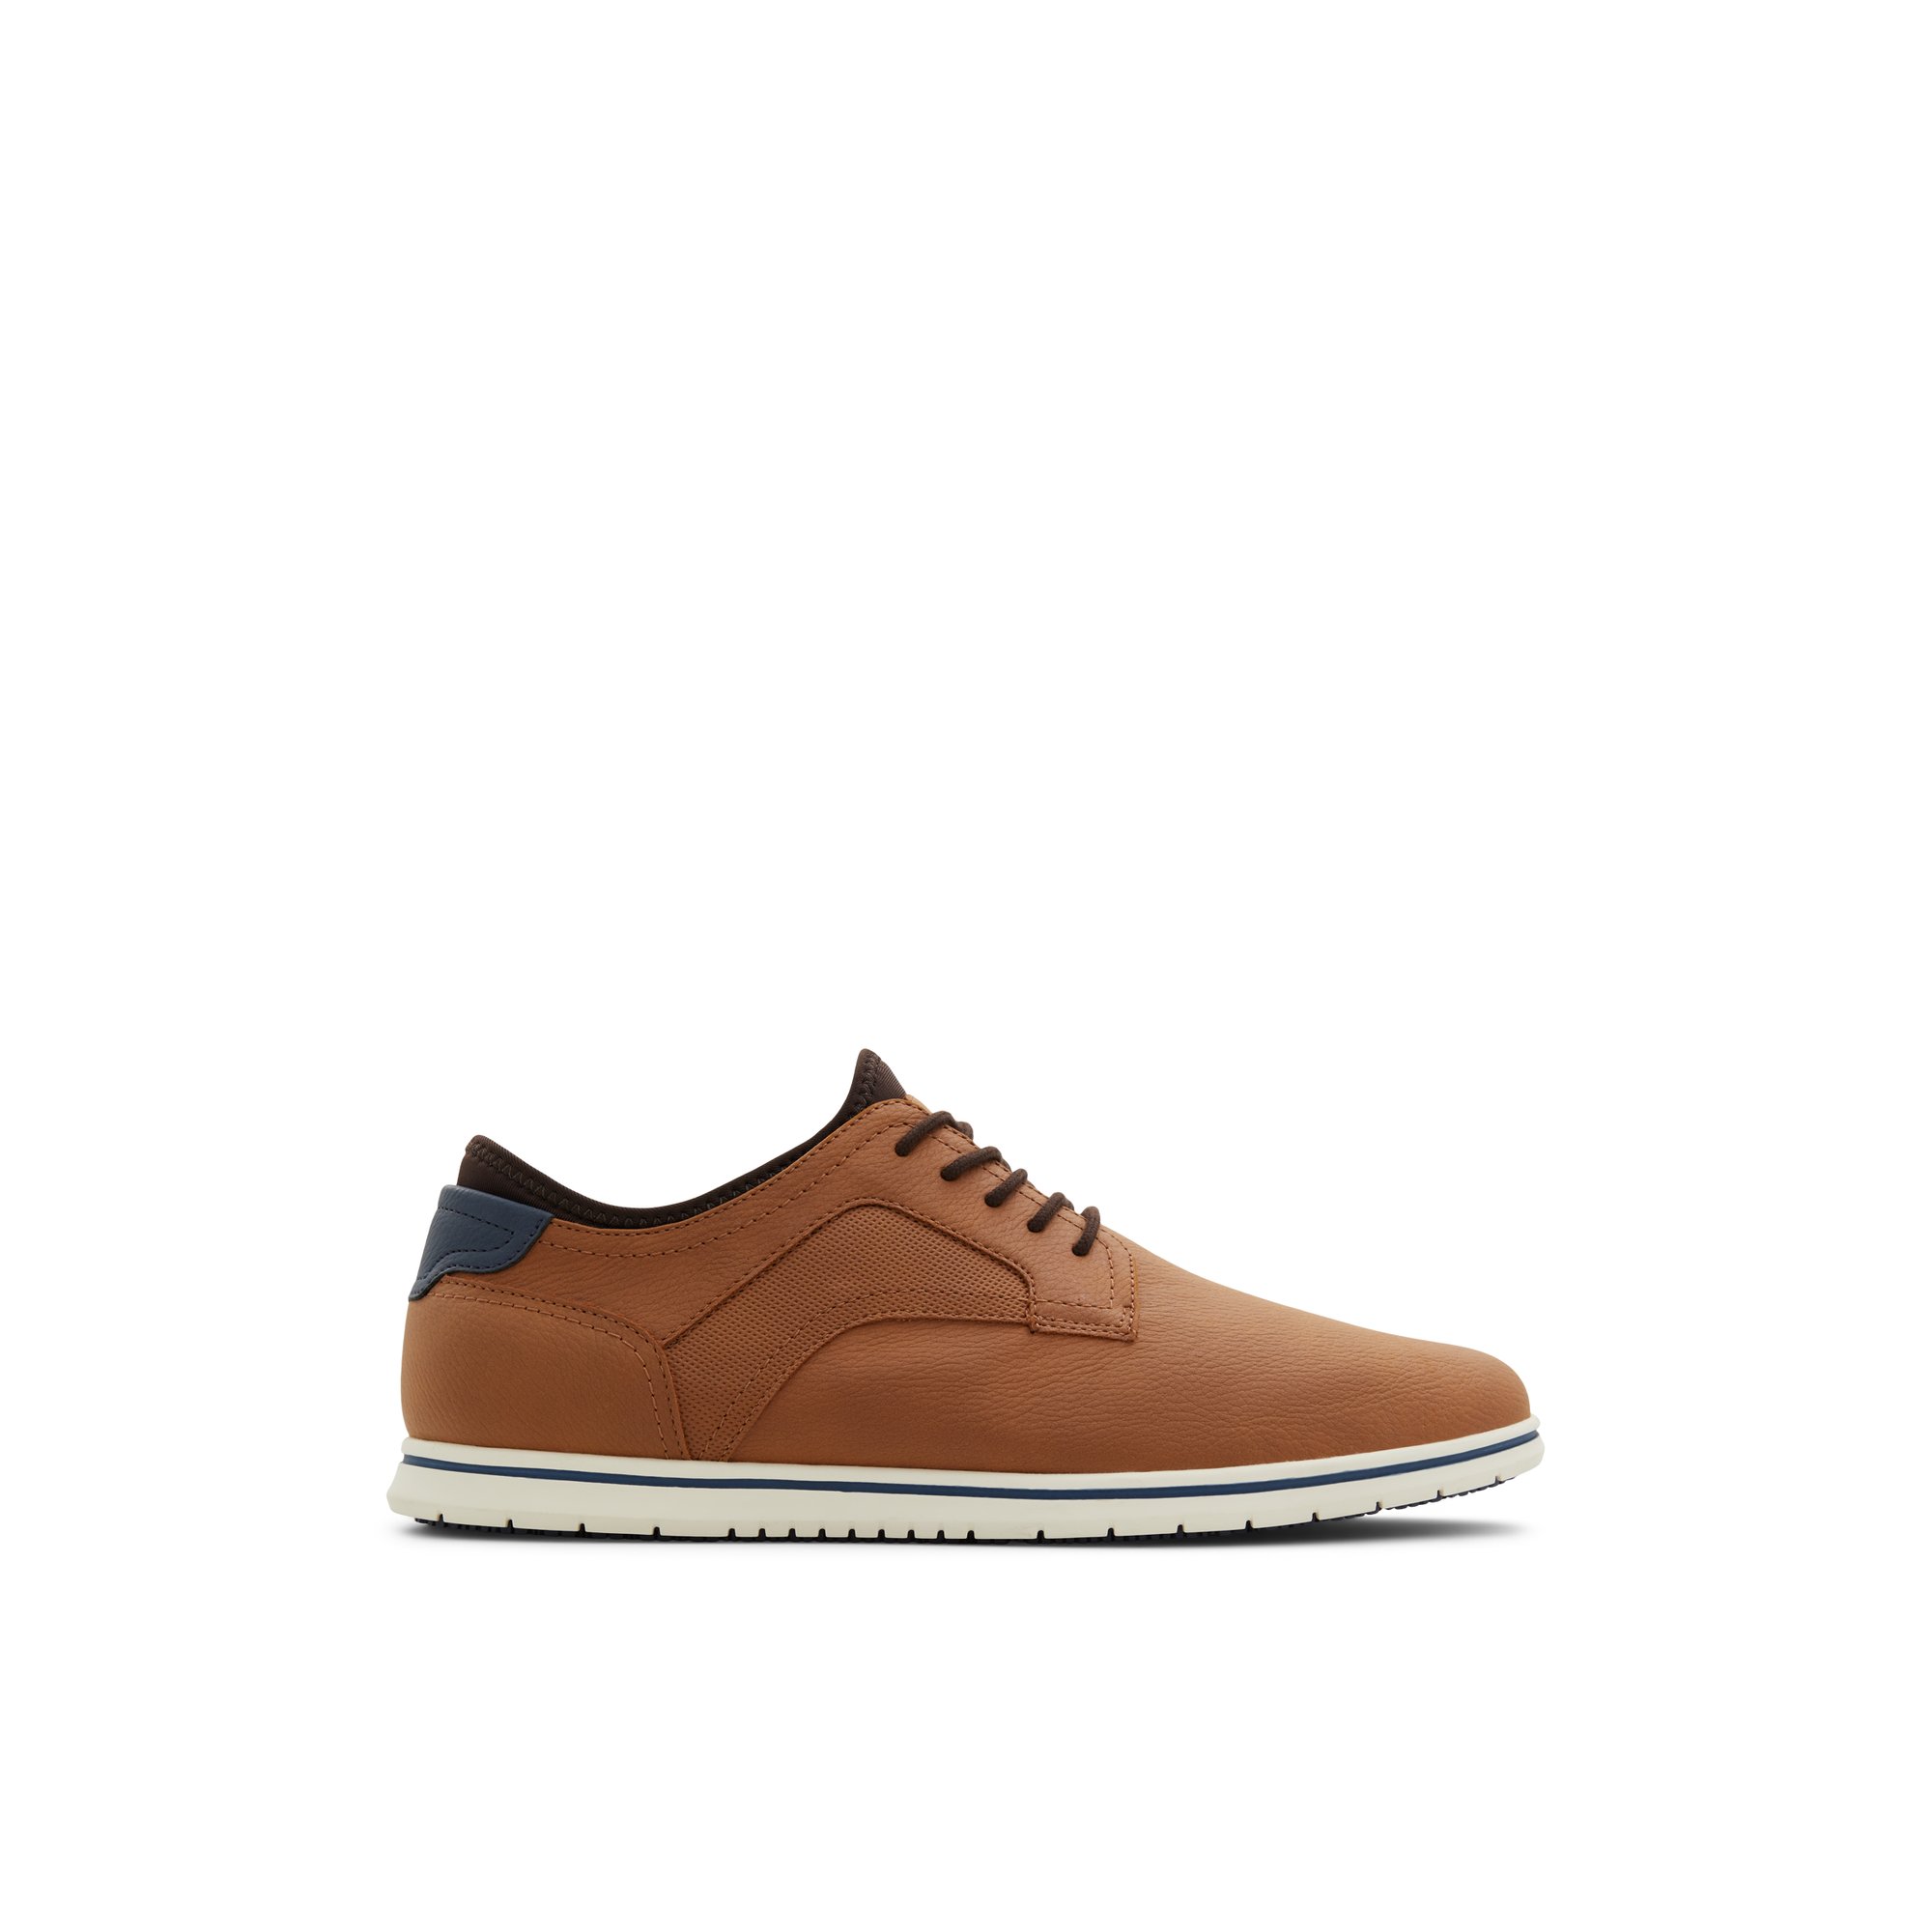 ALDO Drymos - Men's Casual Shoes - Brown